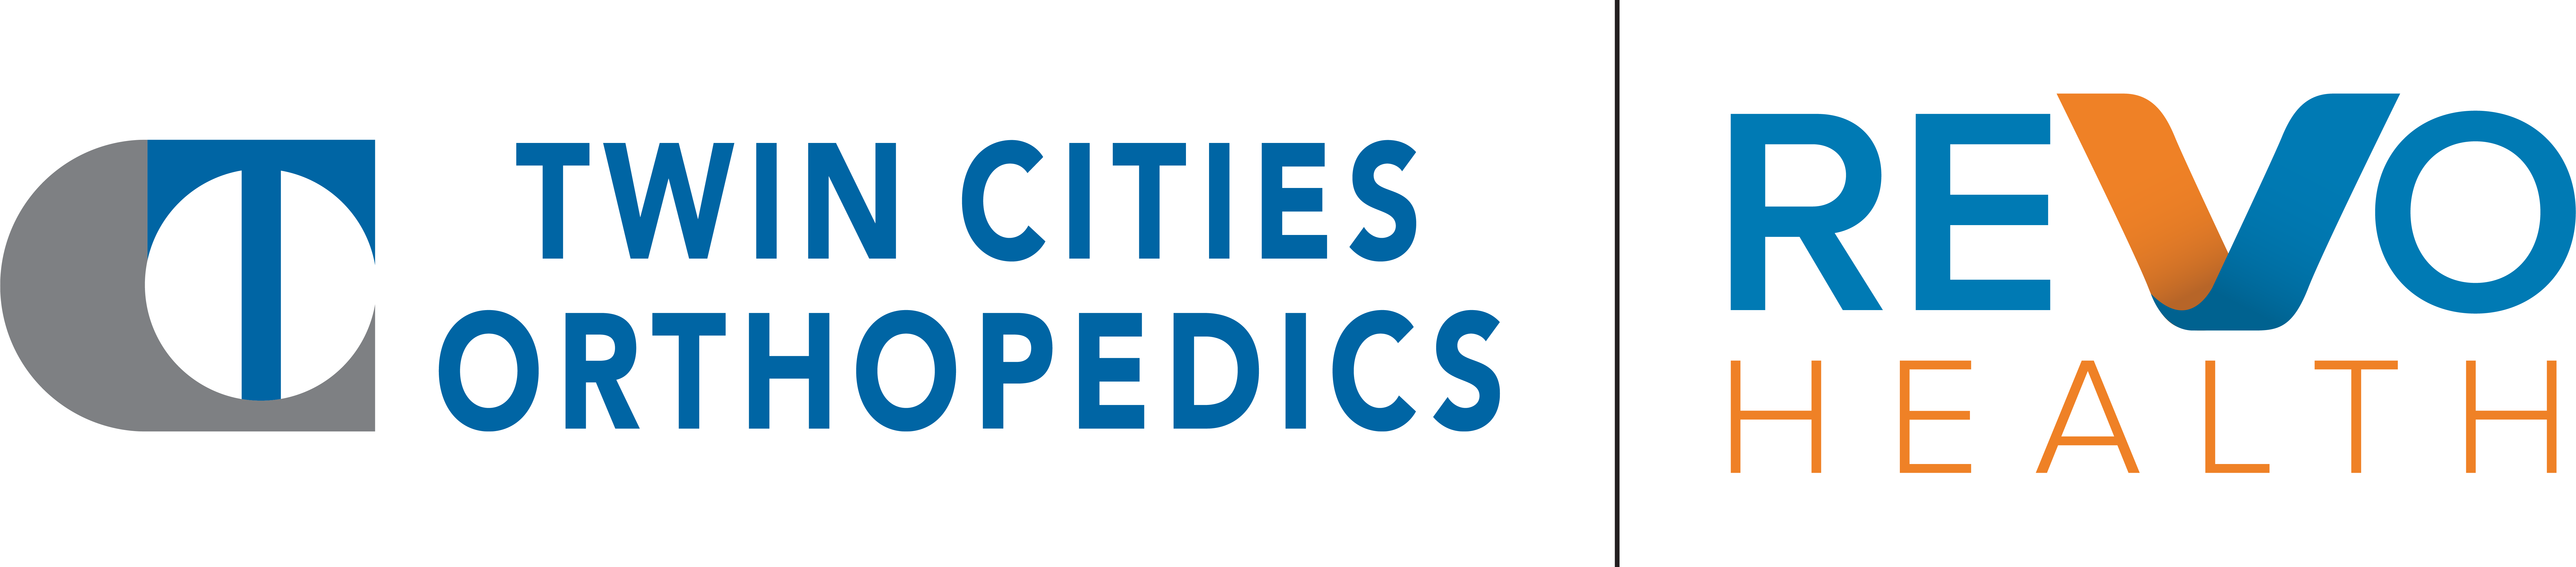 Twin Cities Orthopedics/Revo Health Company Logo